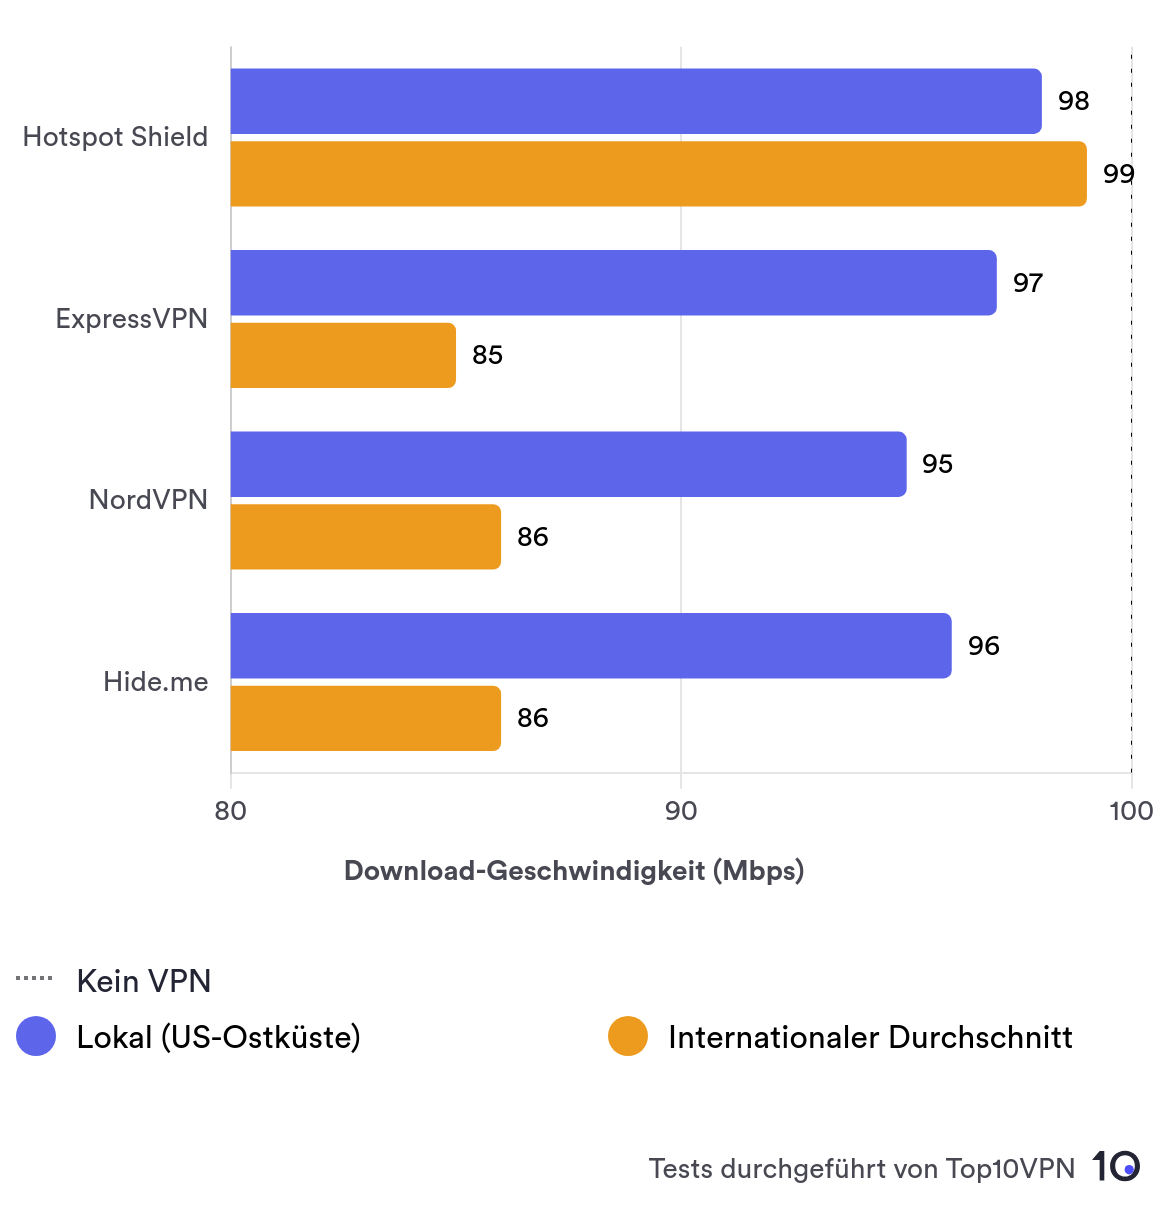 Balkendiagramm zum Vergleich der Geschwindigkeiten von Hotspot Shield im Nah- und Fernverkehr mit anderen Top-VPNs.